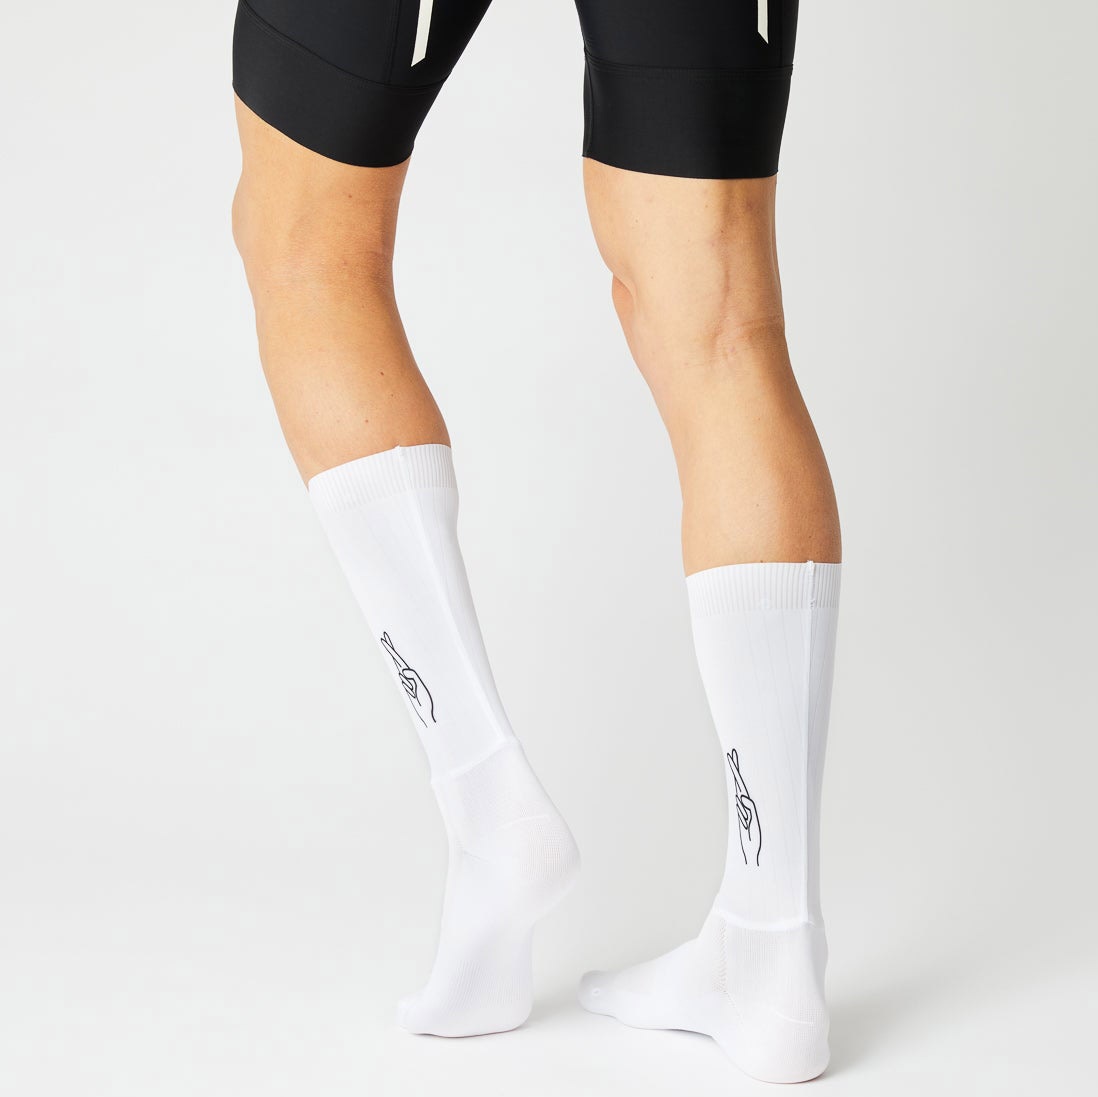 Beklædning - Sokker - Fingerscrossed AERO Sokker Logo - Hvid